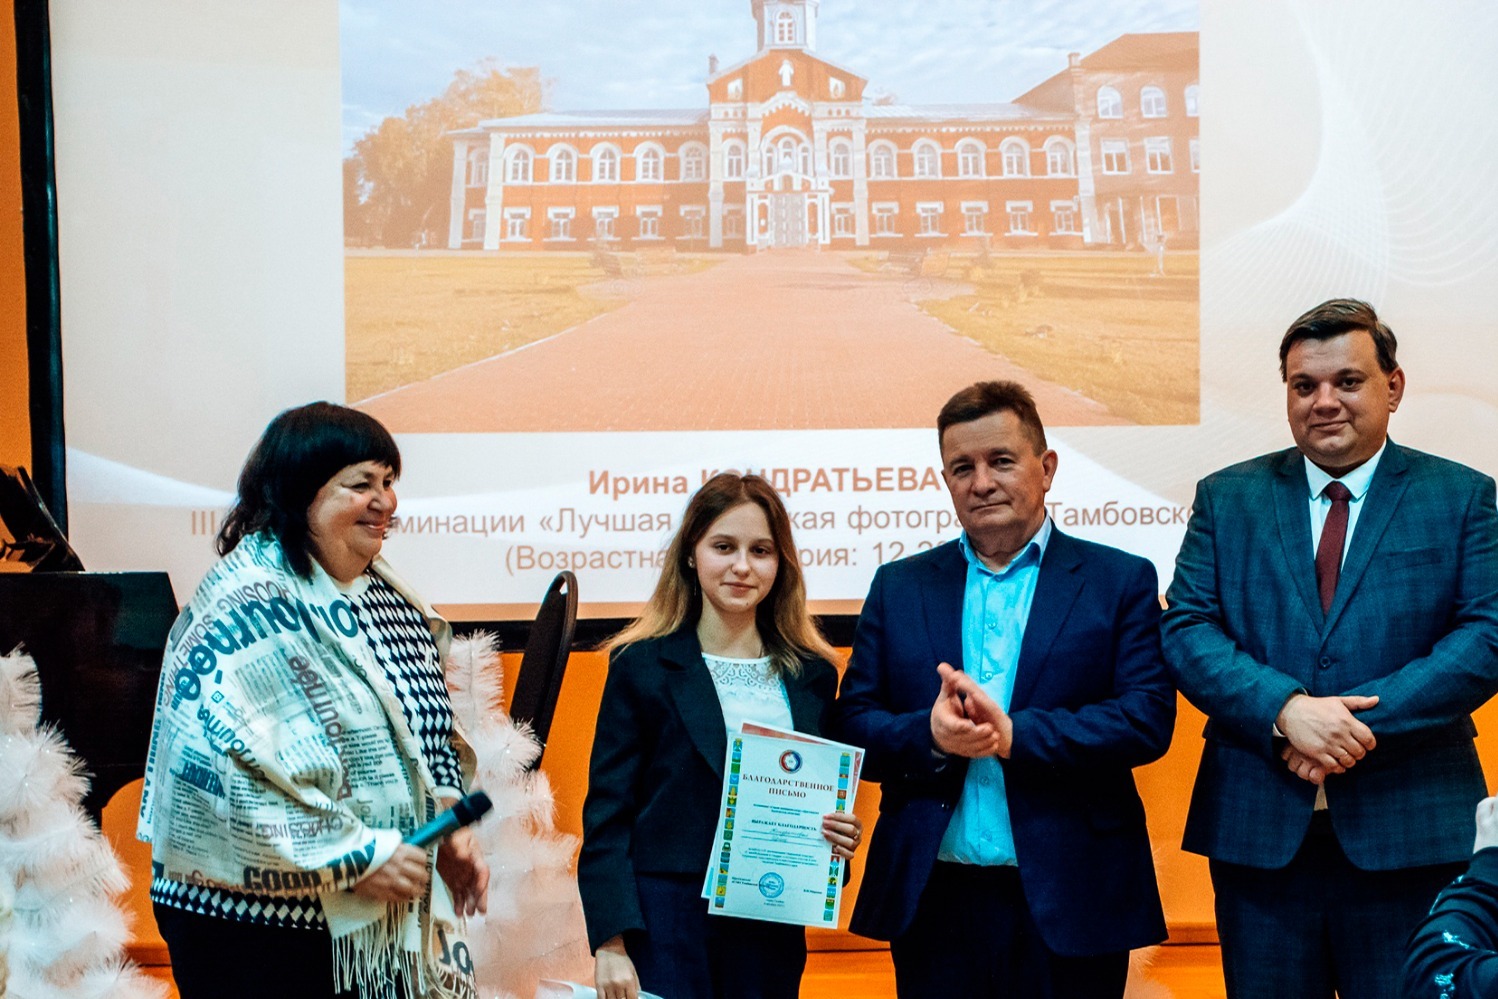 Учредители конкурса вручили награду  Ирине Кондратьевой